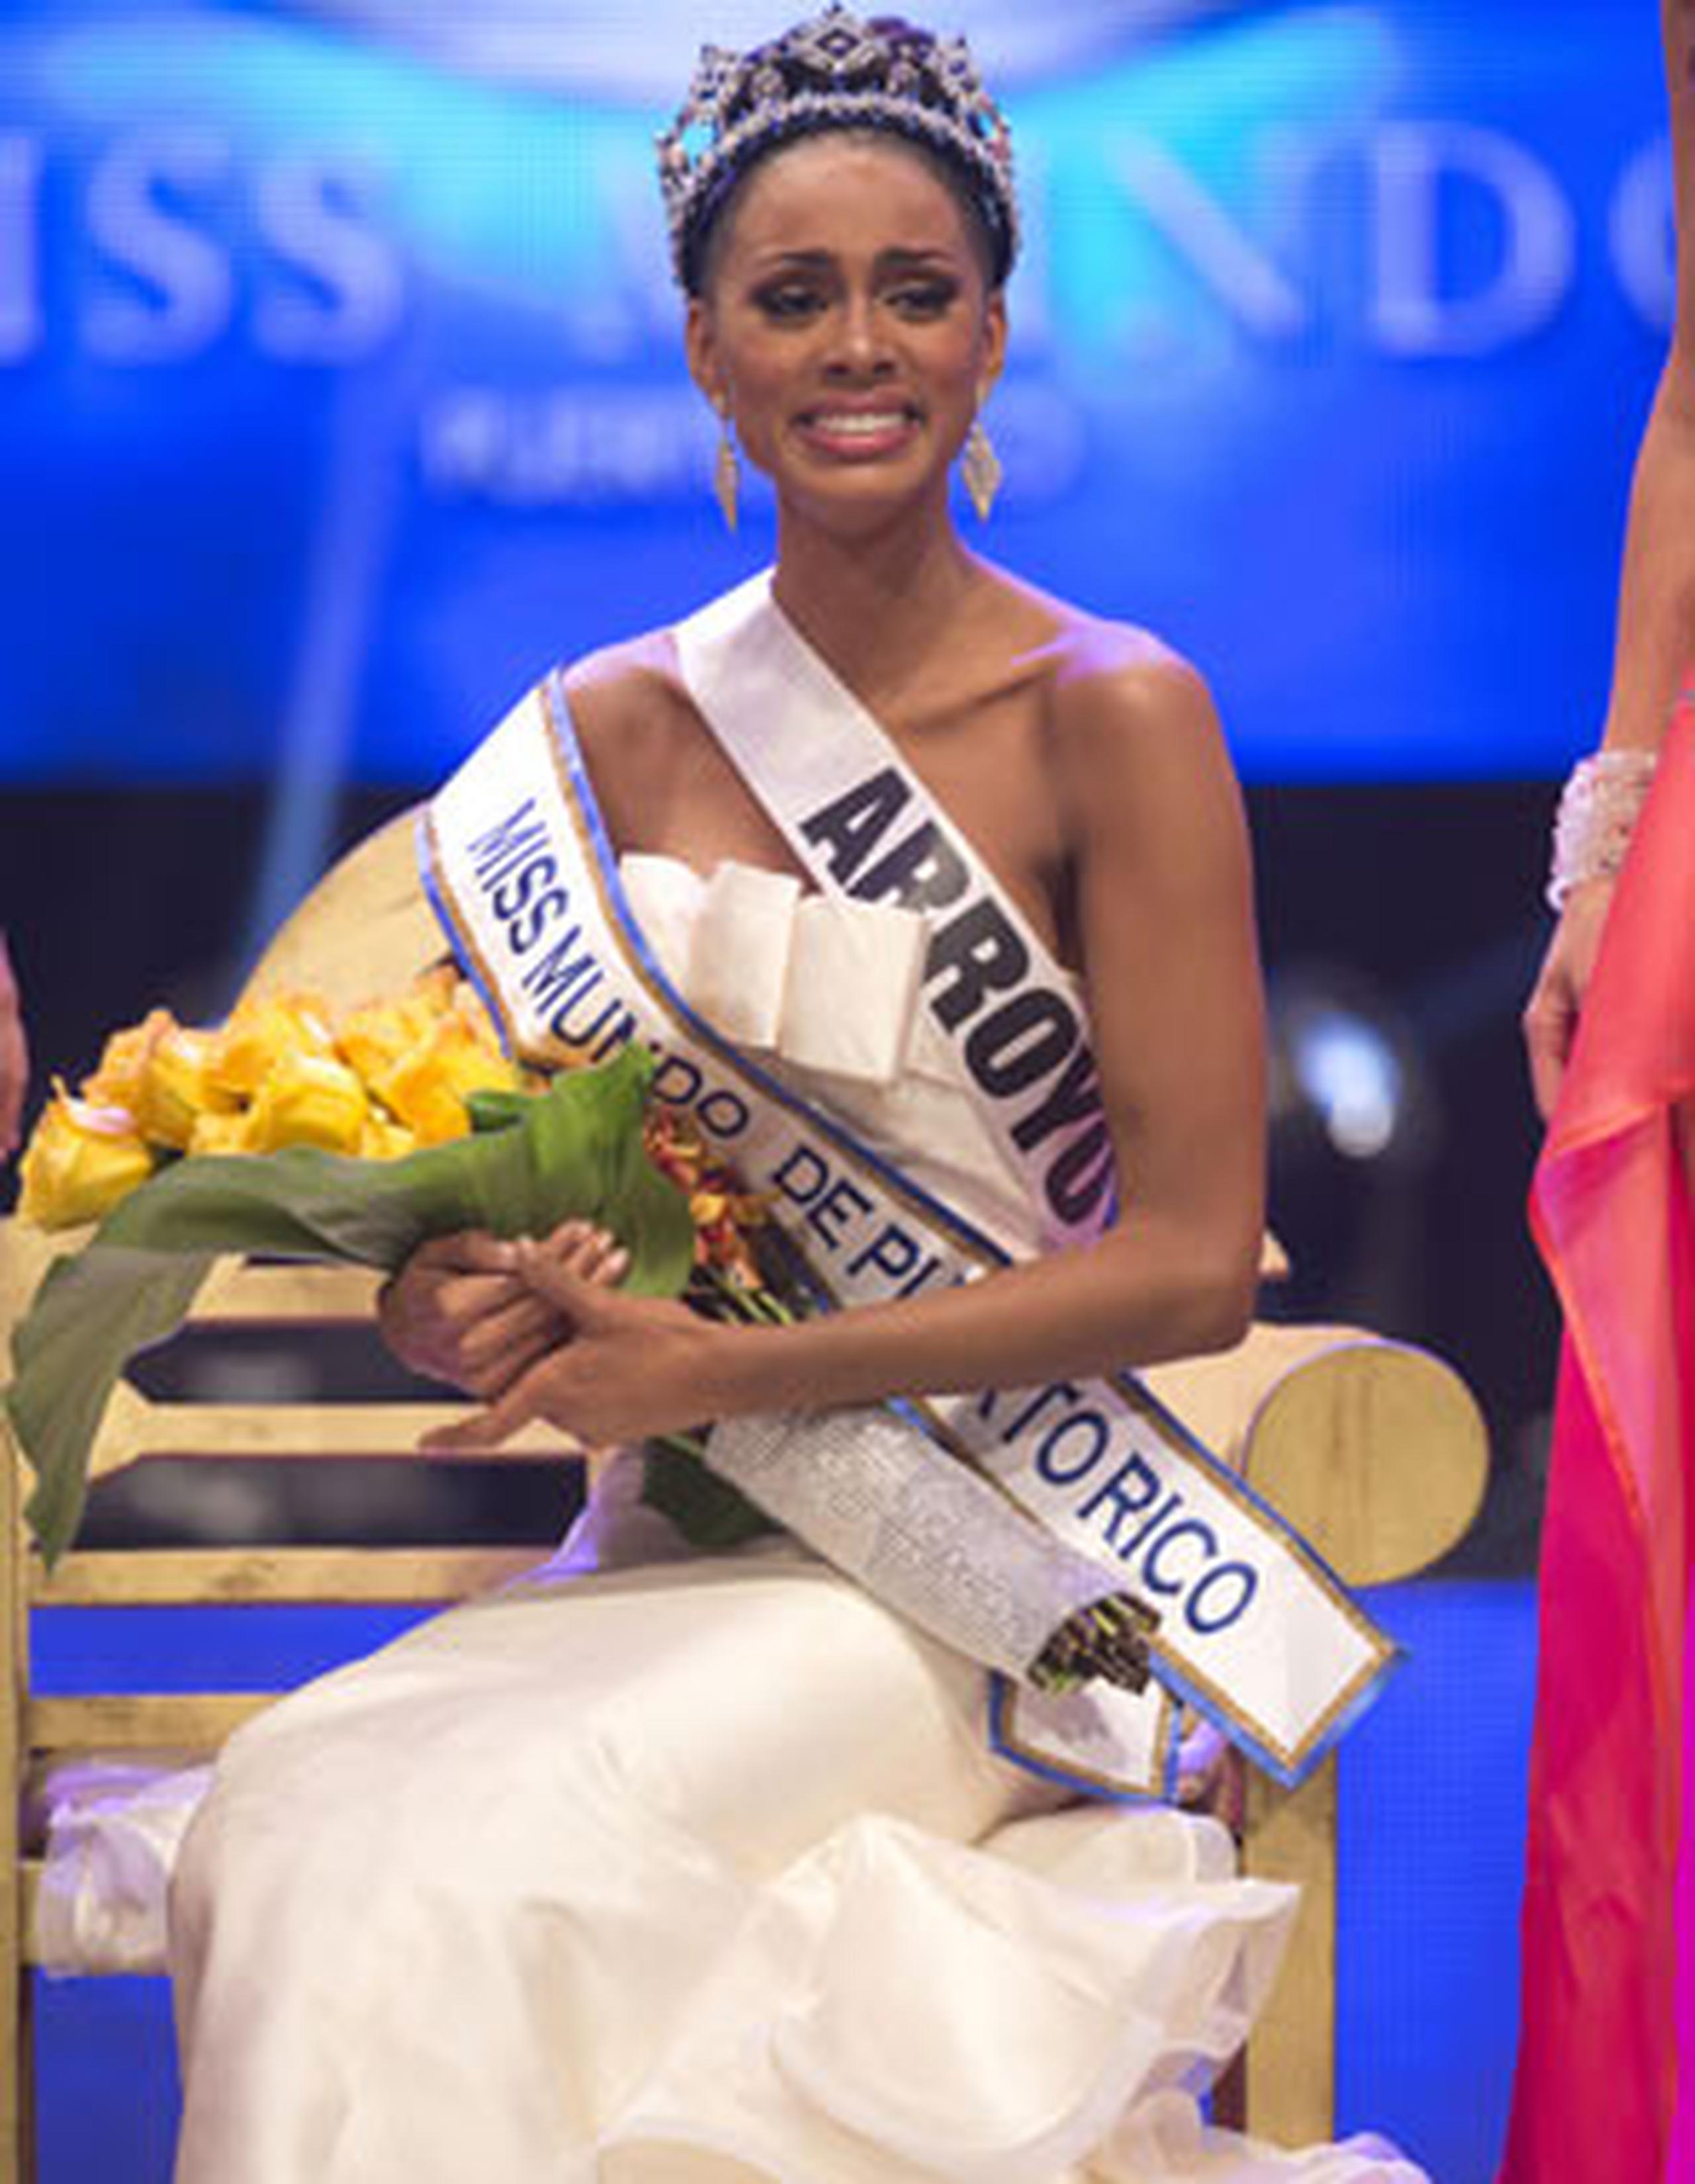 La nueva reina había participado antes en concursos de belleza, entre ellos Miss Universe PR 2013. (tonito.zayas@gfrmedia.com)